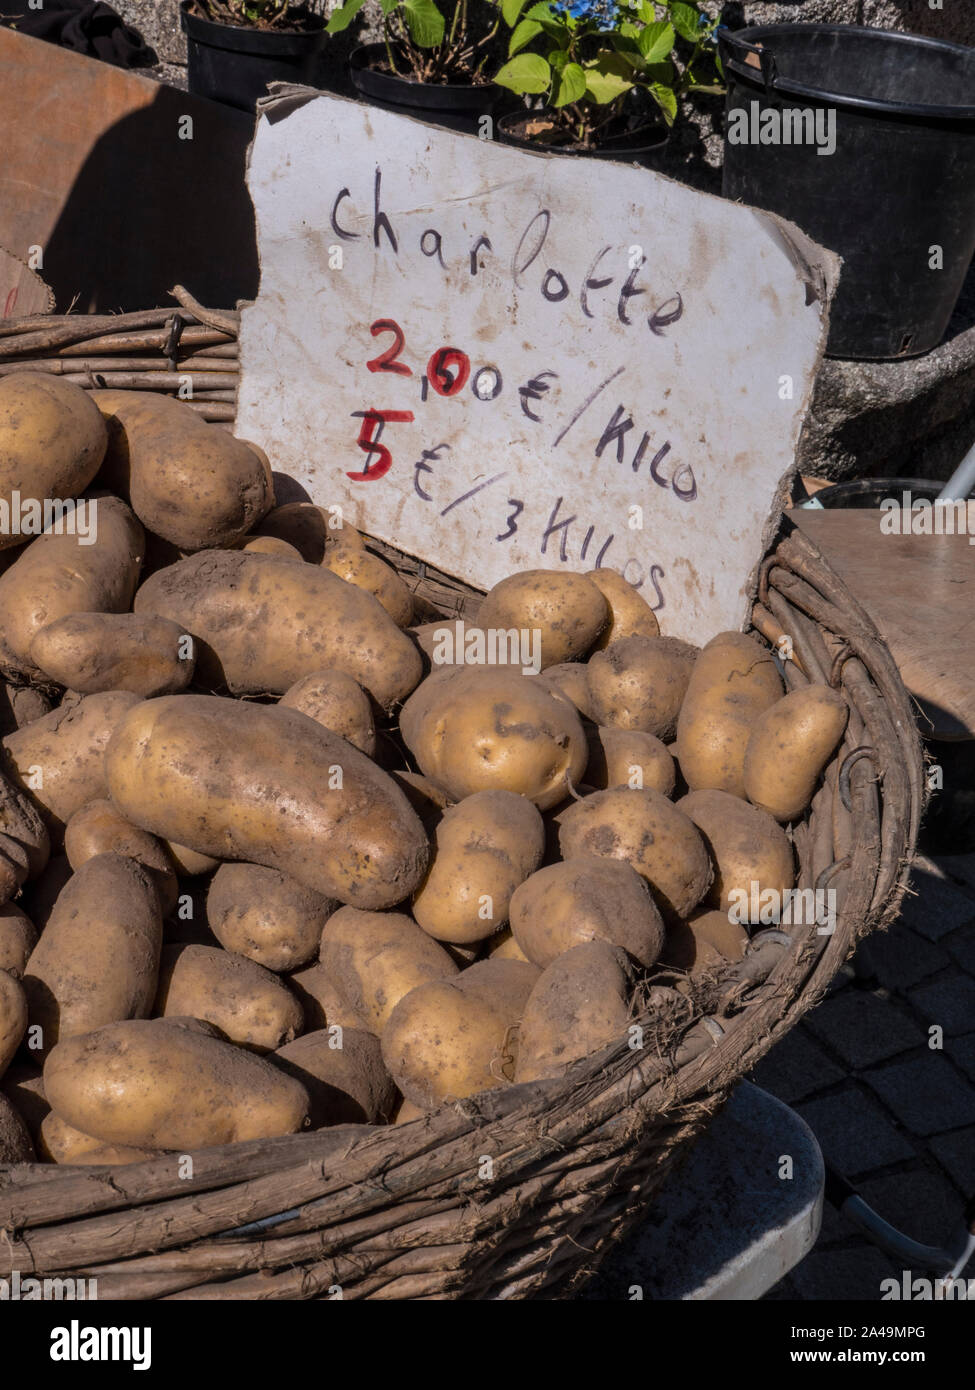 Pommes de terre CHARLOTTE FRANÇAIS 2€ kilo Pannier panier de pommes de terre française à l'écran dans Nevéz marché fermiers frais Bretagne France Banque D'Images